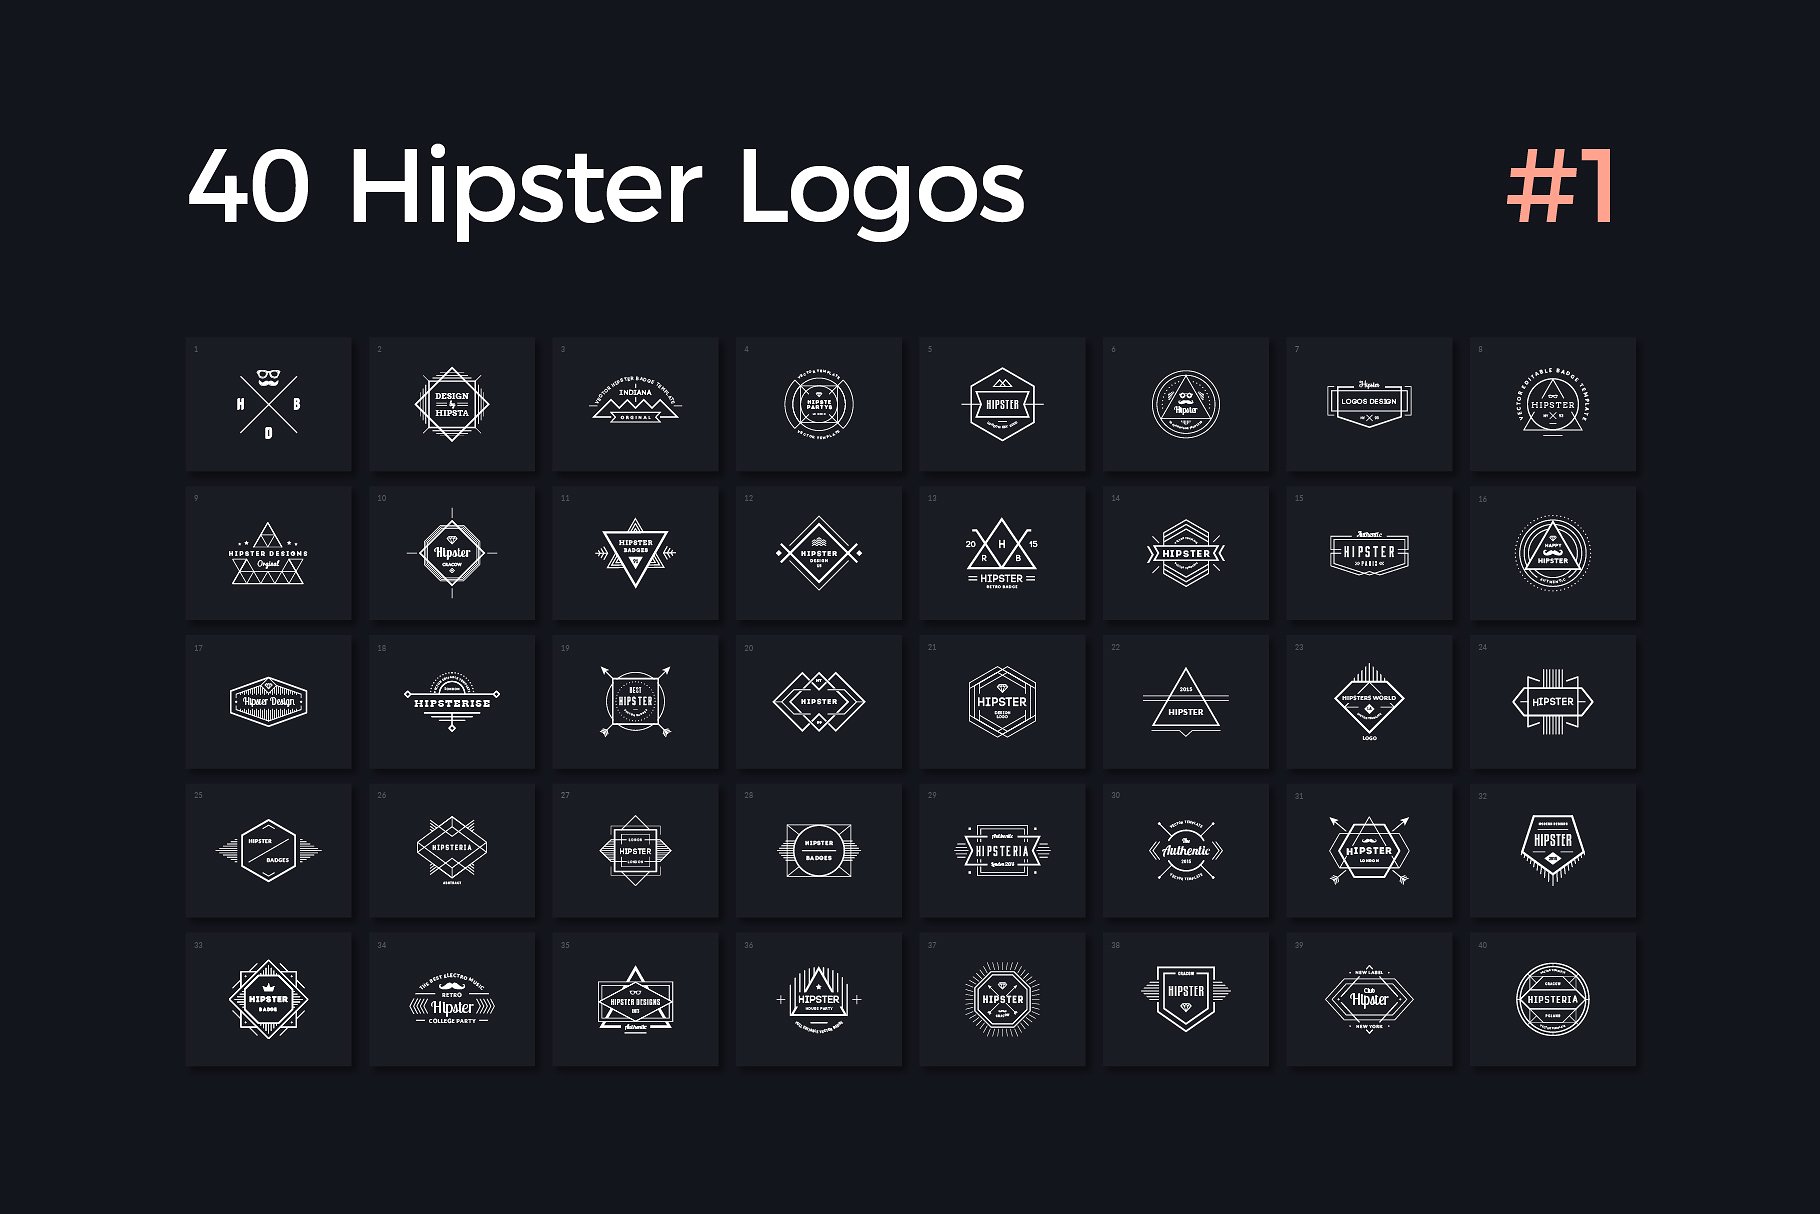 40个复古时尚潮人徽标模板V.1 40 Hipster Logos Vol. 1插图